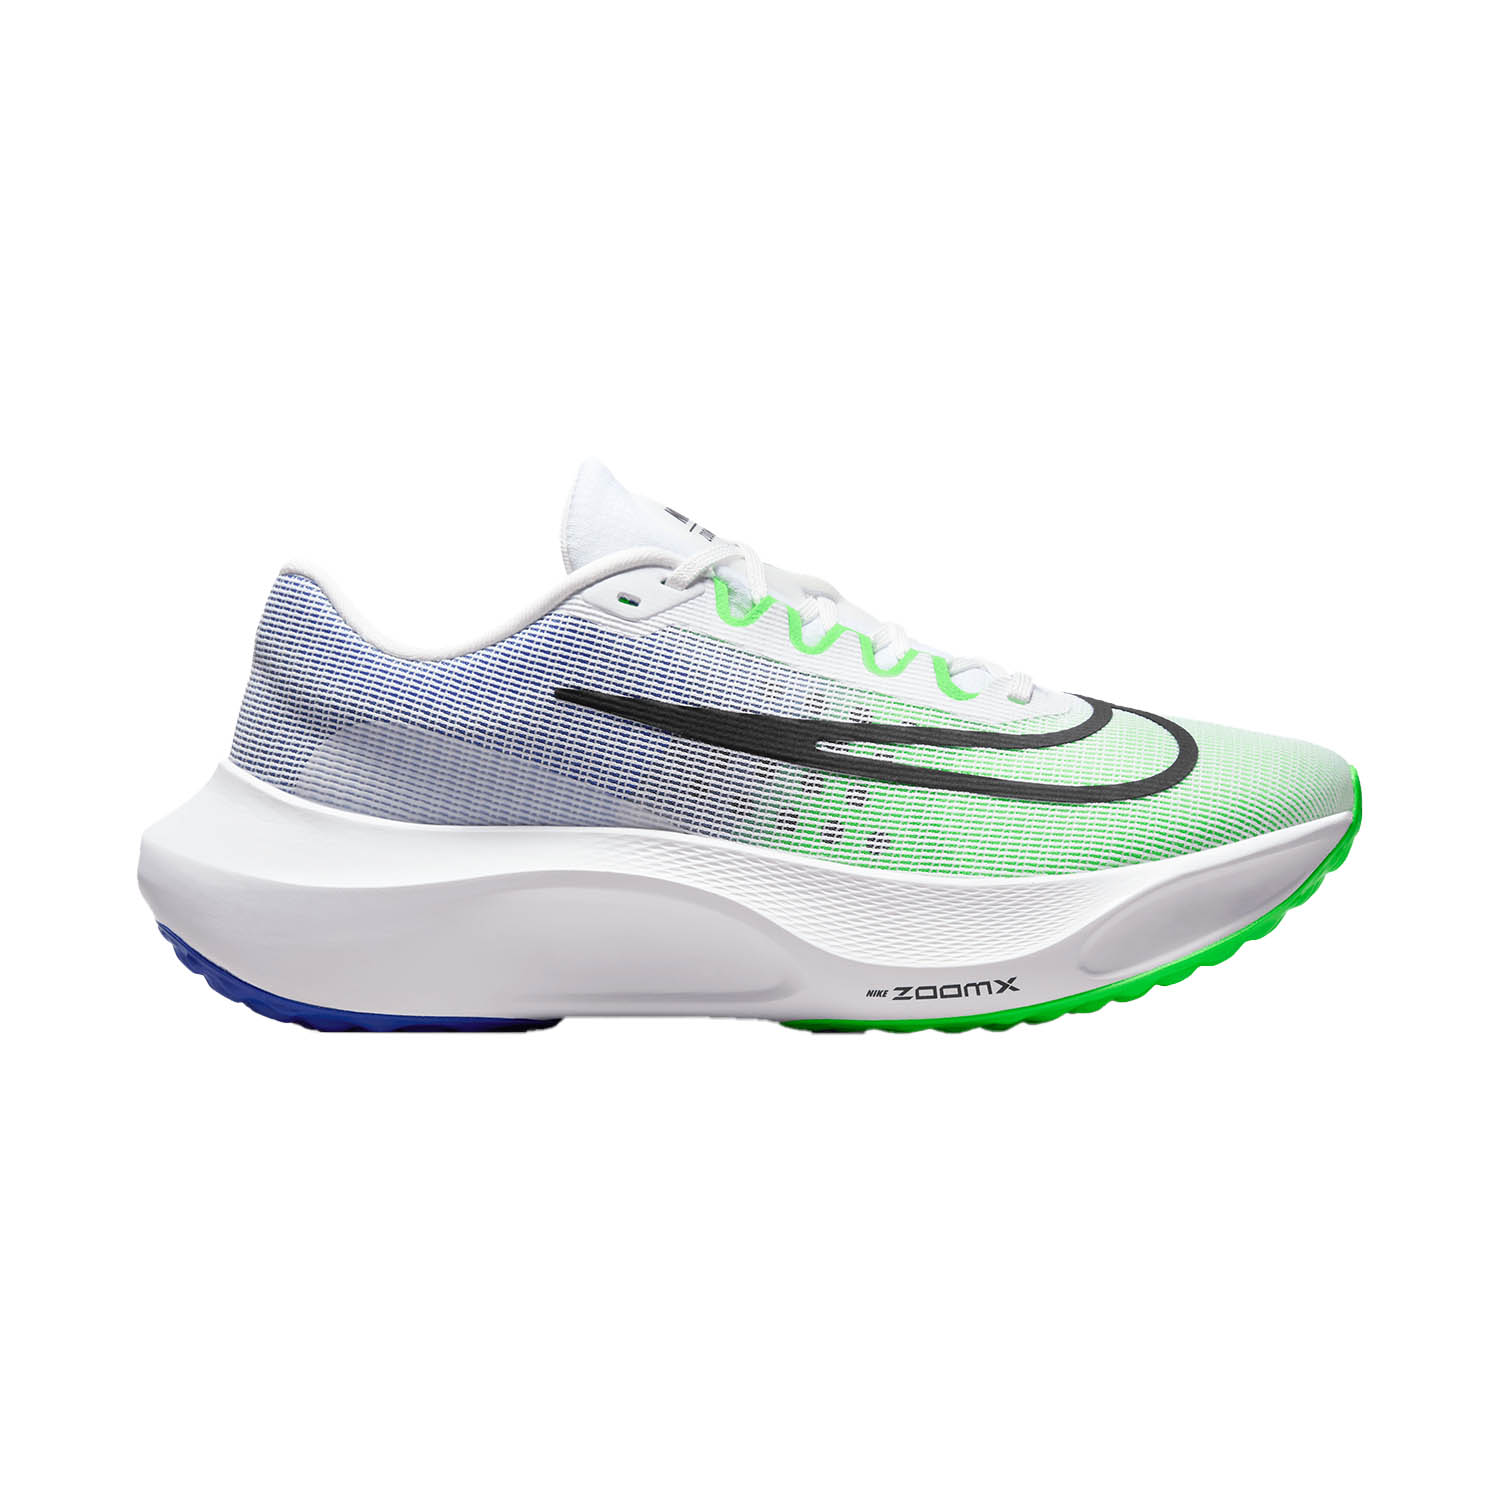 Nike Zoom Fly 5 Men's Running Shoes - Black/White